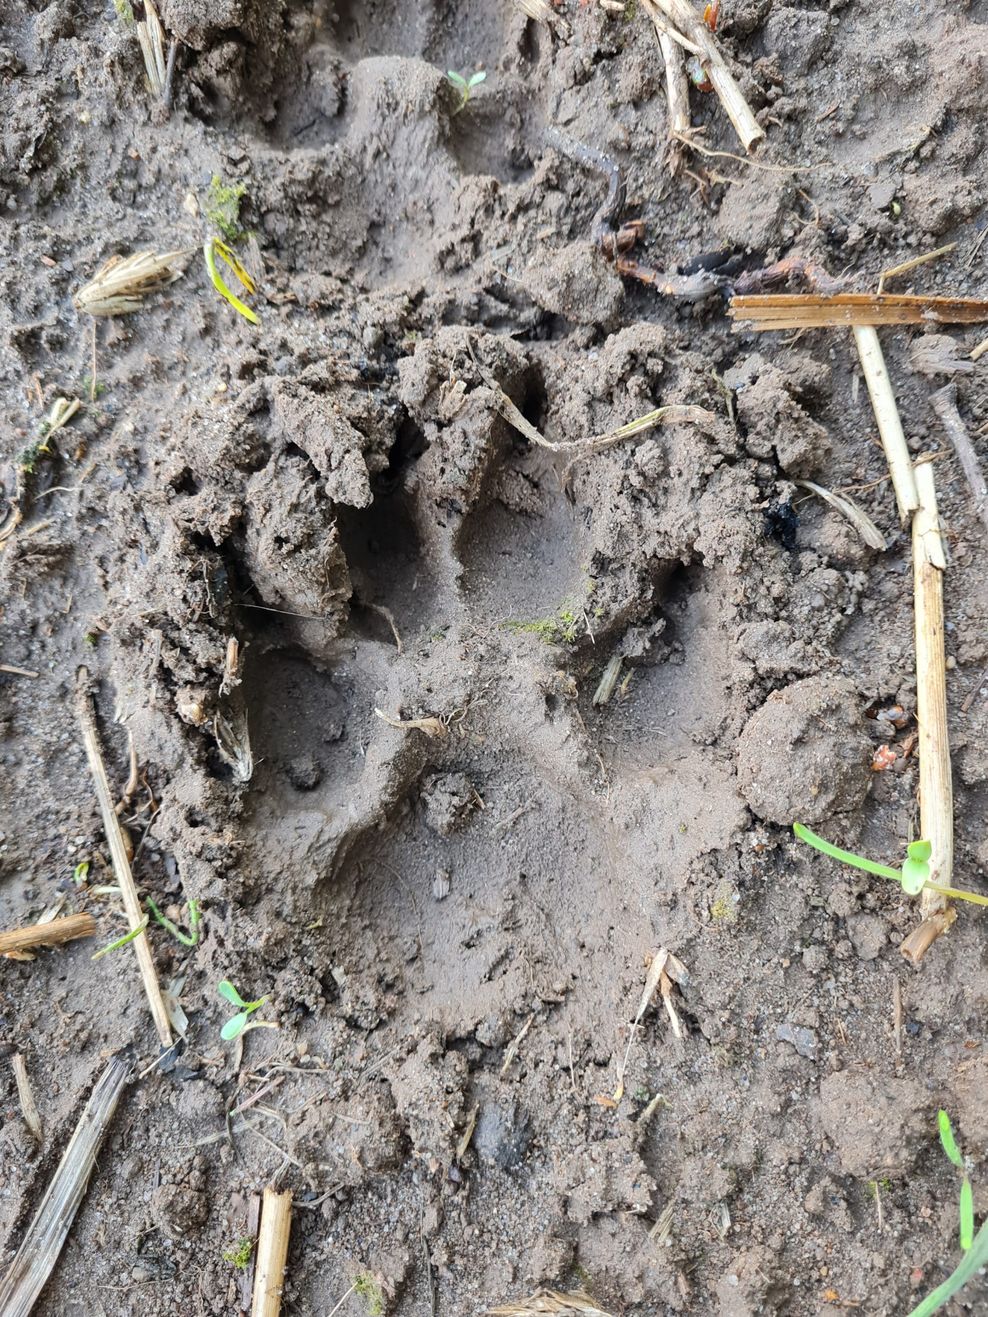 Die Spuren legen nahe, dass es sich um eine Wolf-Attacke gehandelt haben muss.